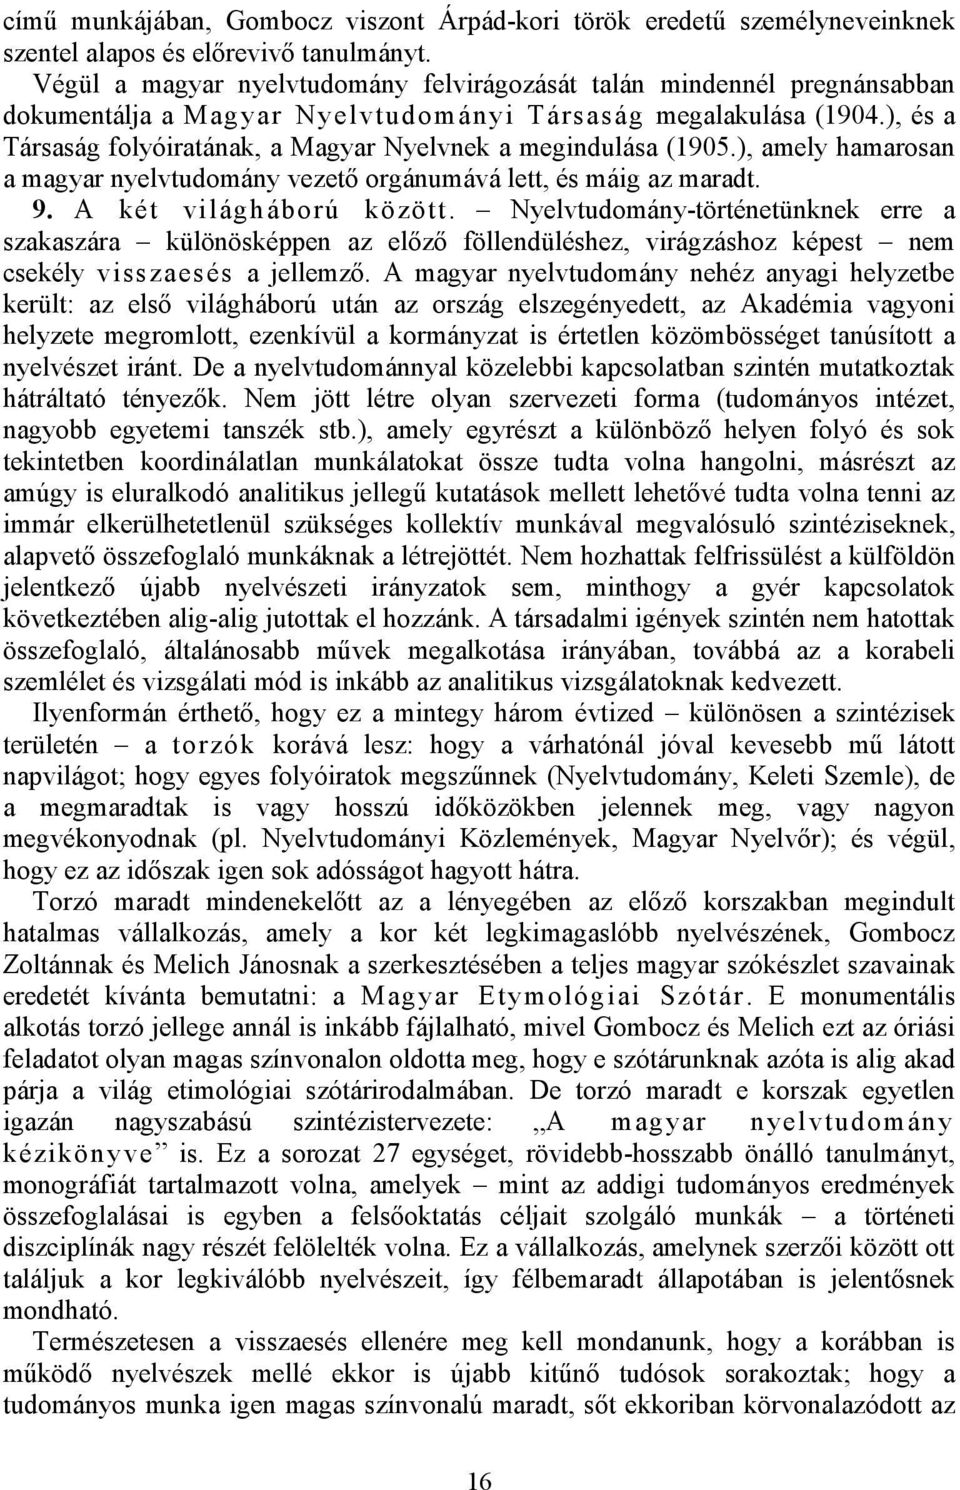 ), és a Társaság folyóiratának, a Magyar Nyelvnek a megindulása (1905.), amely hamarosan a magyar nyelvtudomány vezető orgánumává lett, és máig az maradt. 9. A két világháború között.